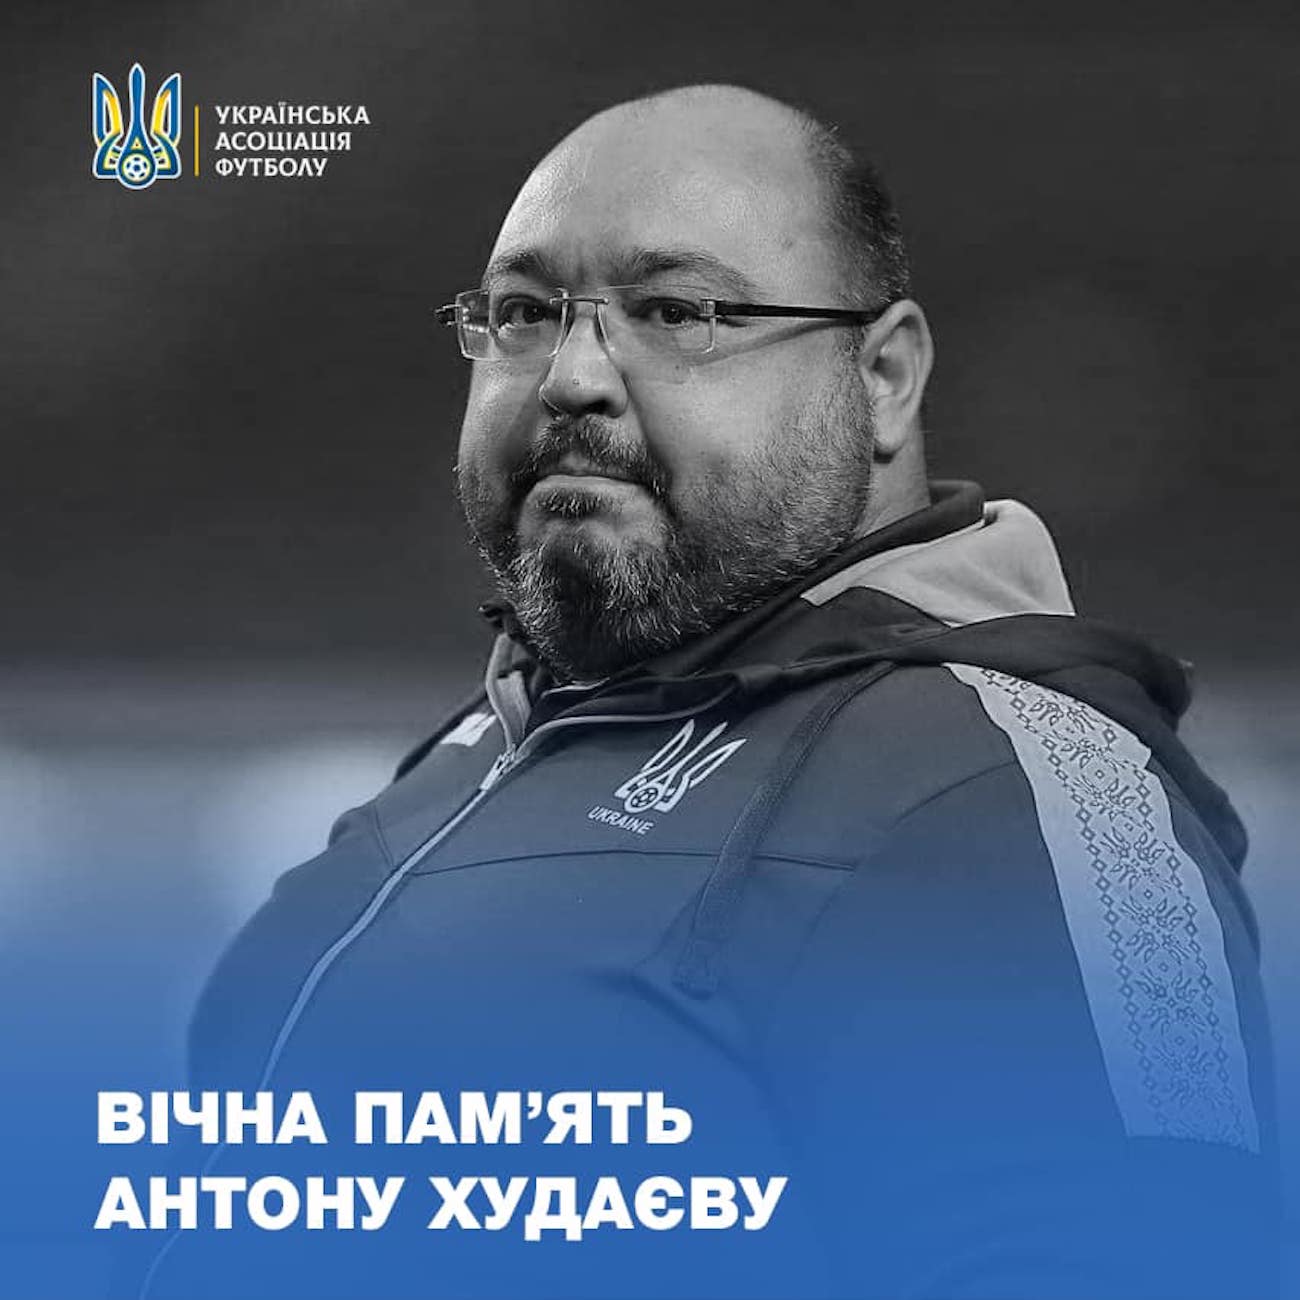 Mor el metge de la selecció ucraïnesa de futbol per coronavirus